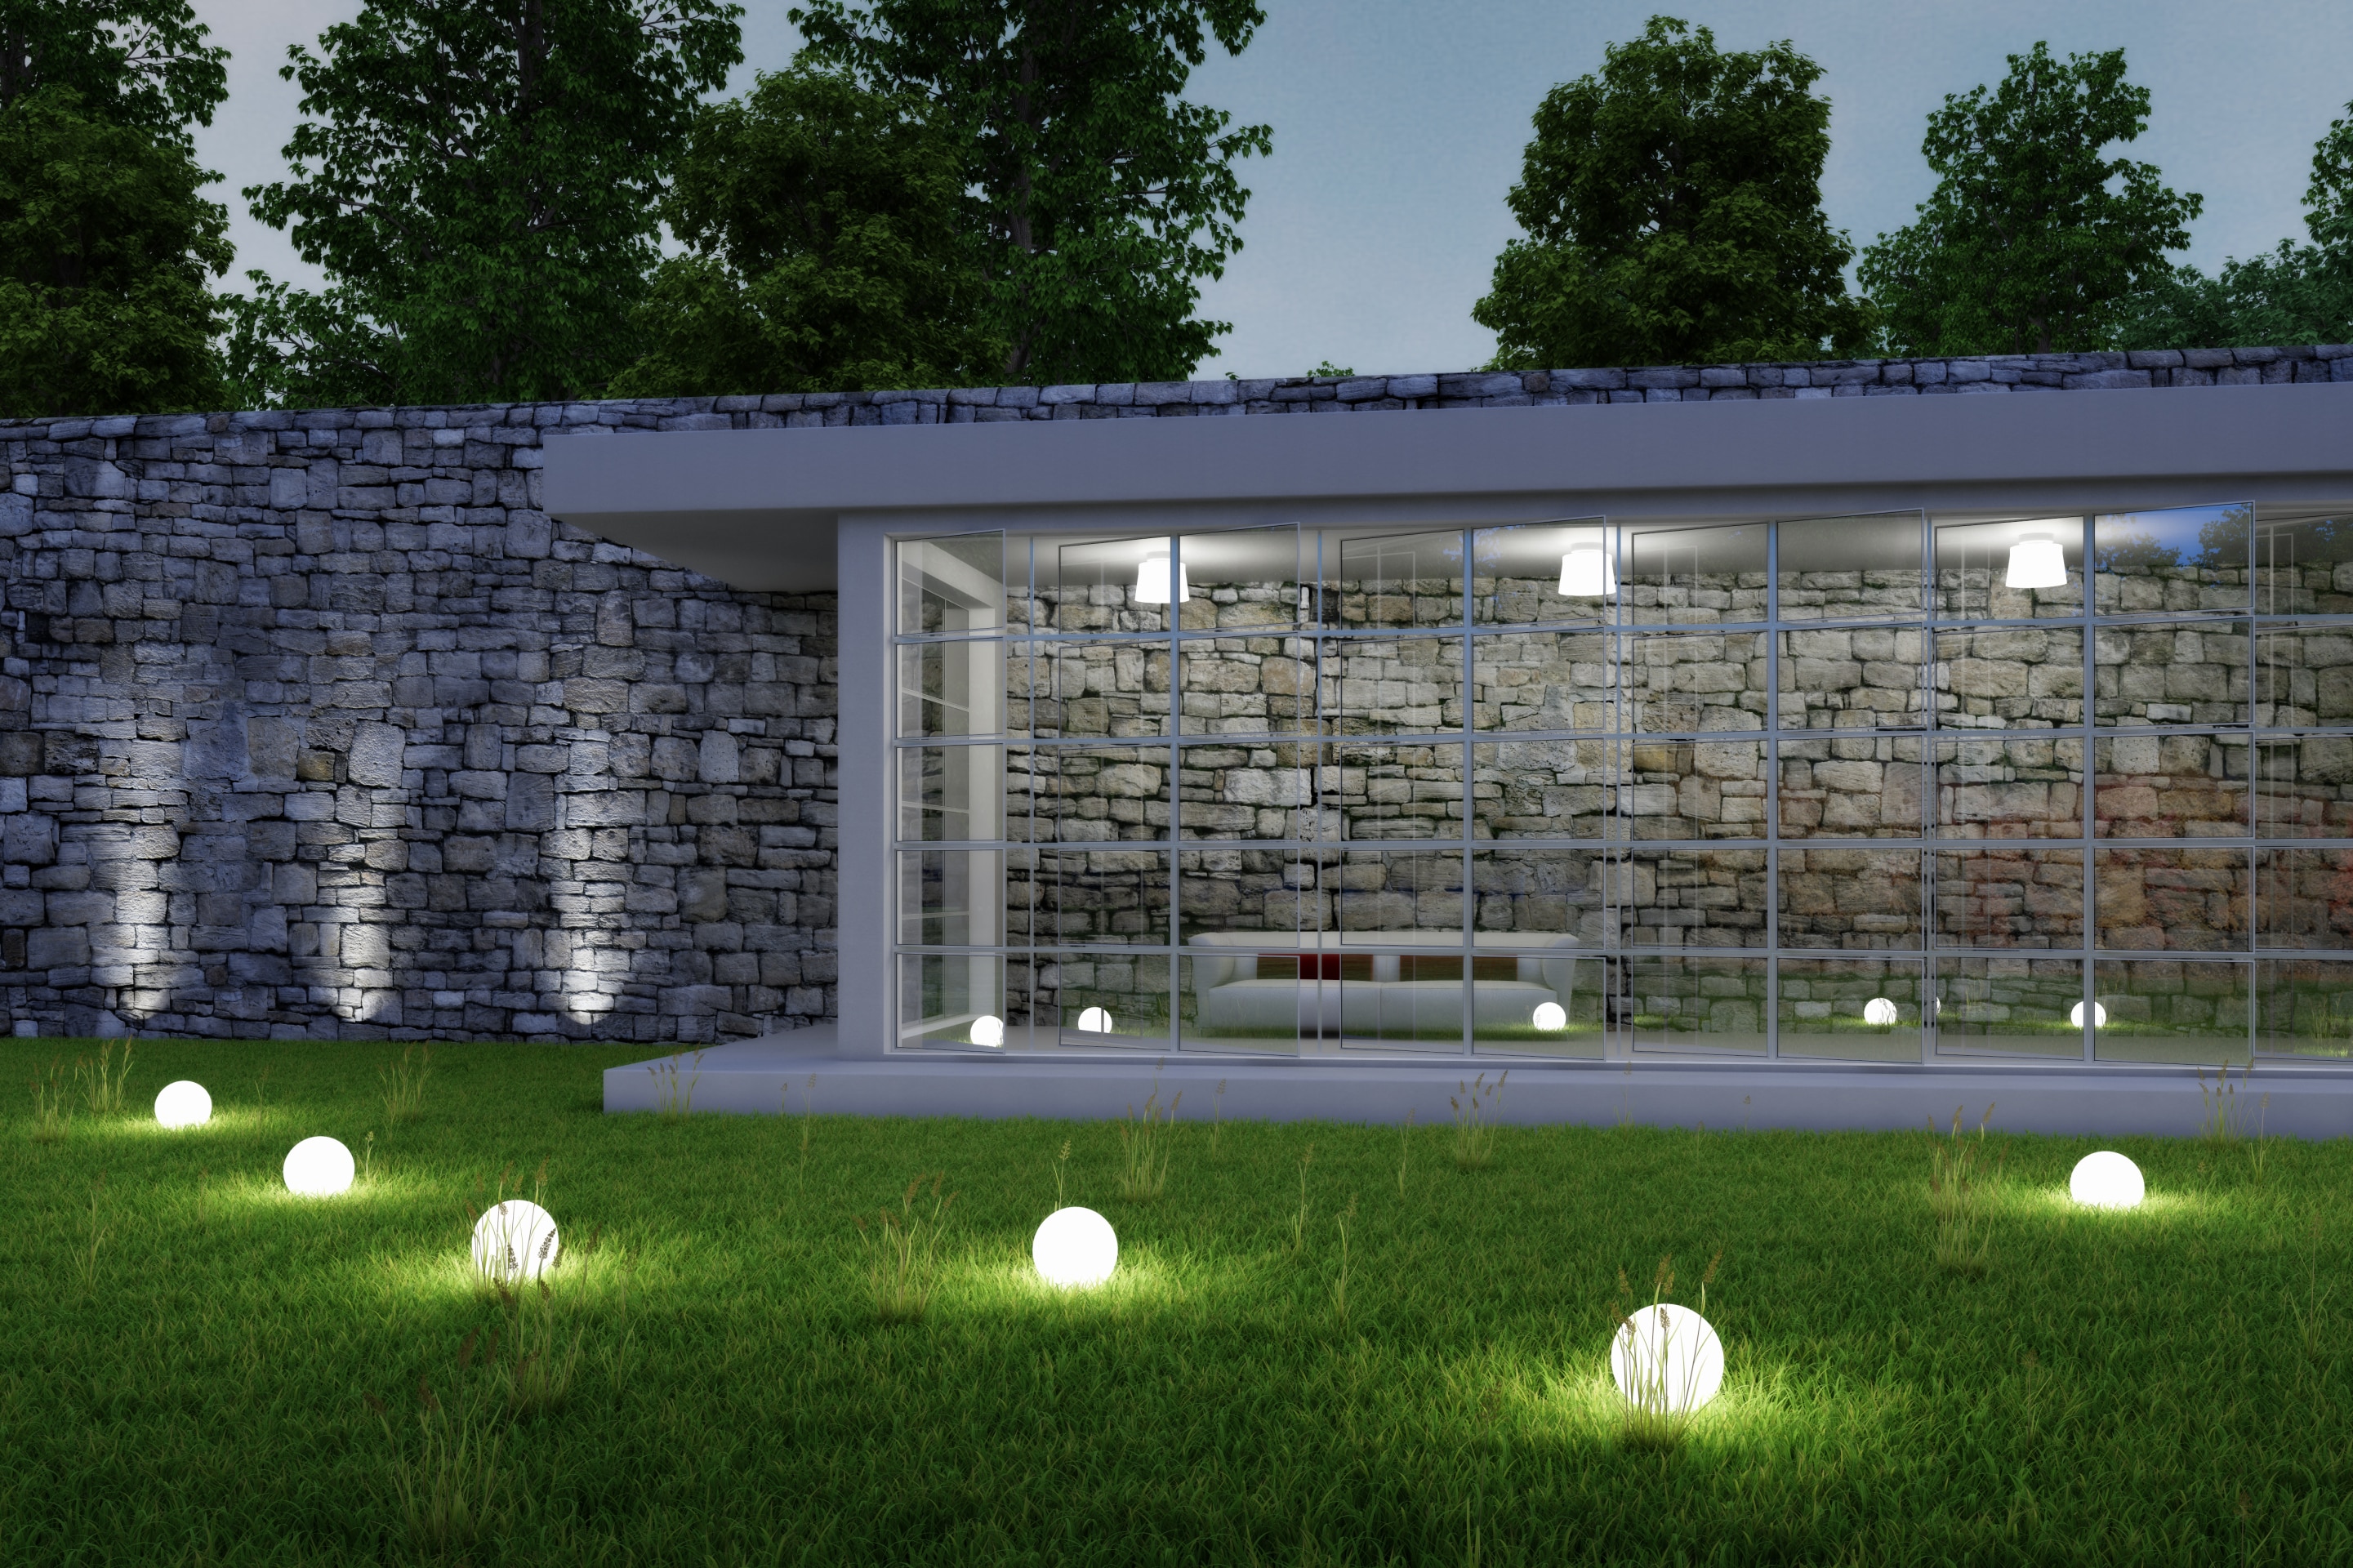 Éclairage extérieur à LED en 45 idées de luminaire de jardin  Luminaires  jardin, Éclairage extérieur, Eclairage exterieur led